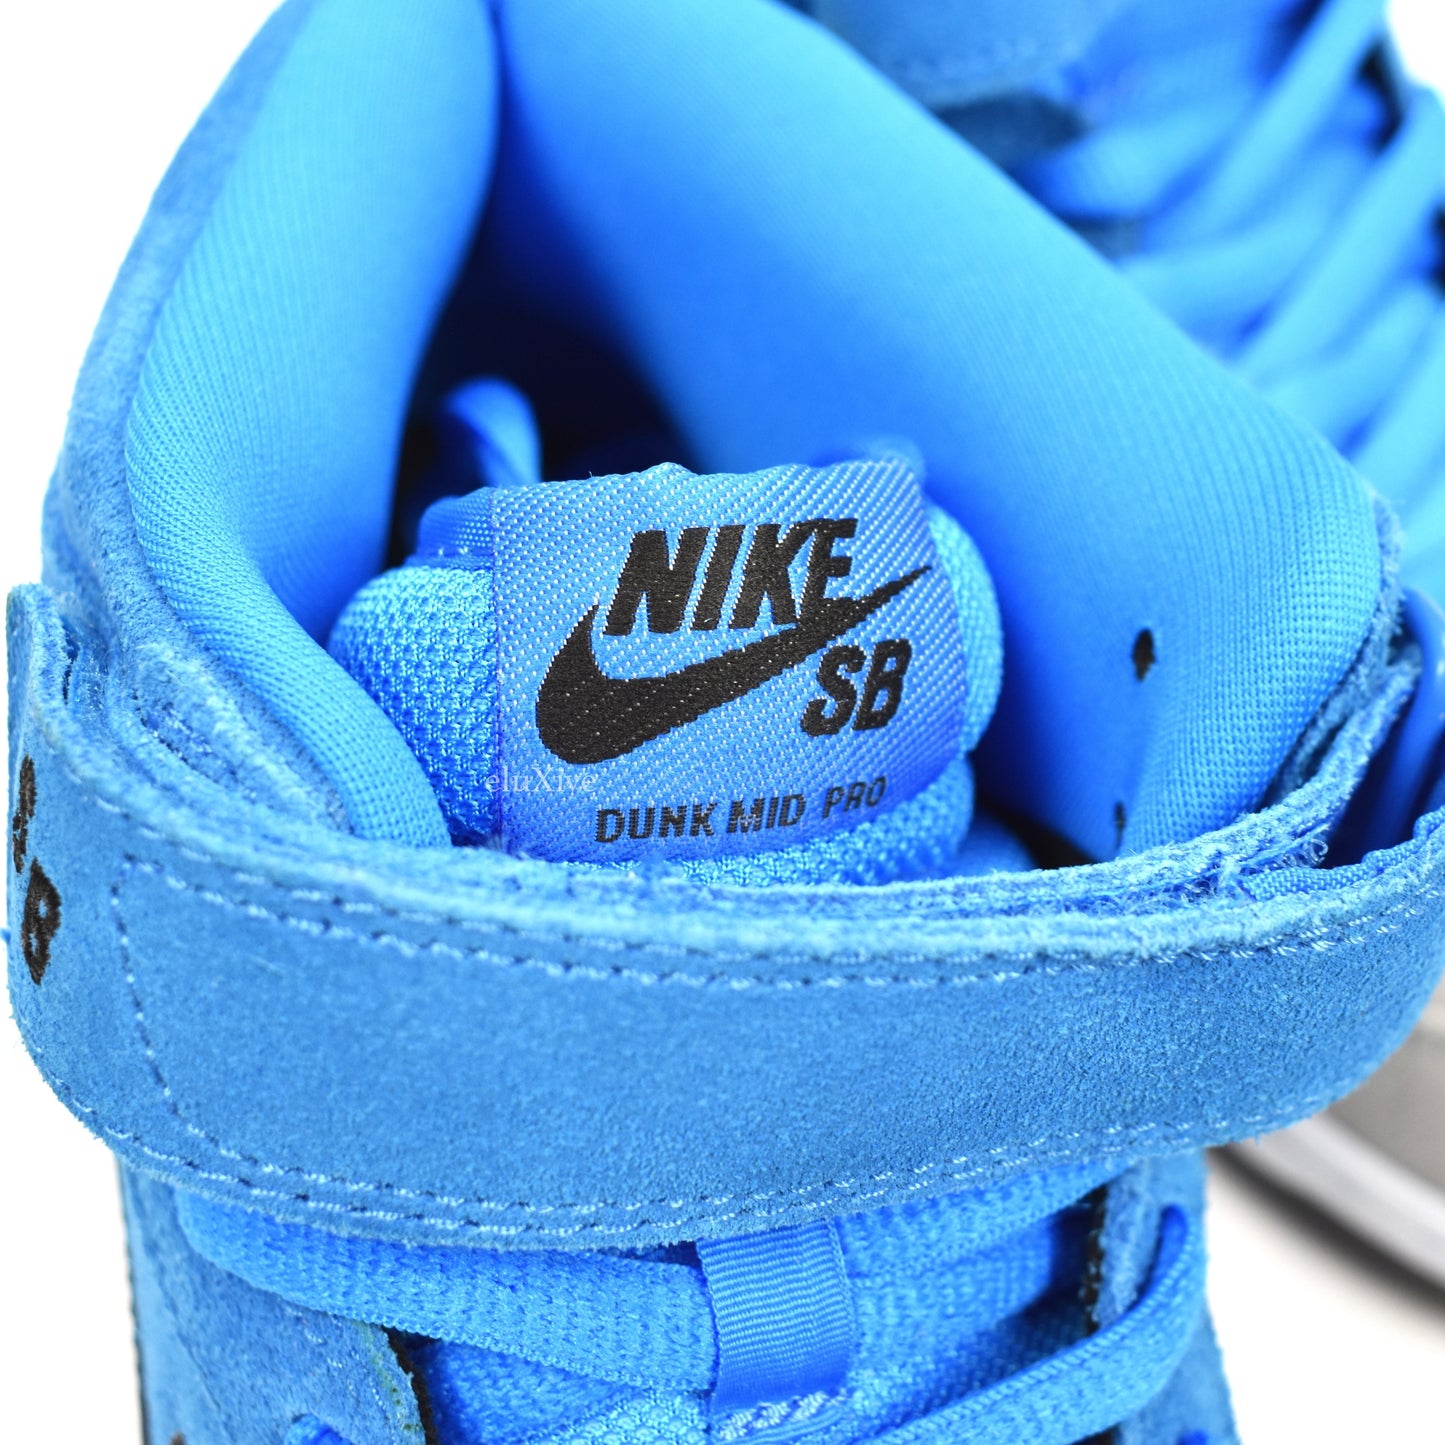 Nike - Dunk Mid Pro SB 'Beavis'